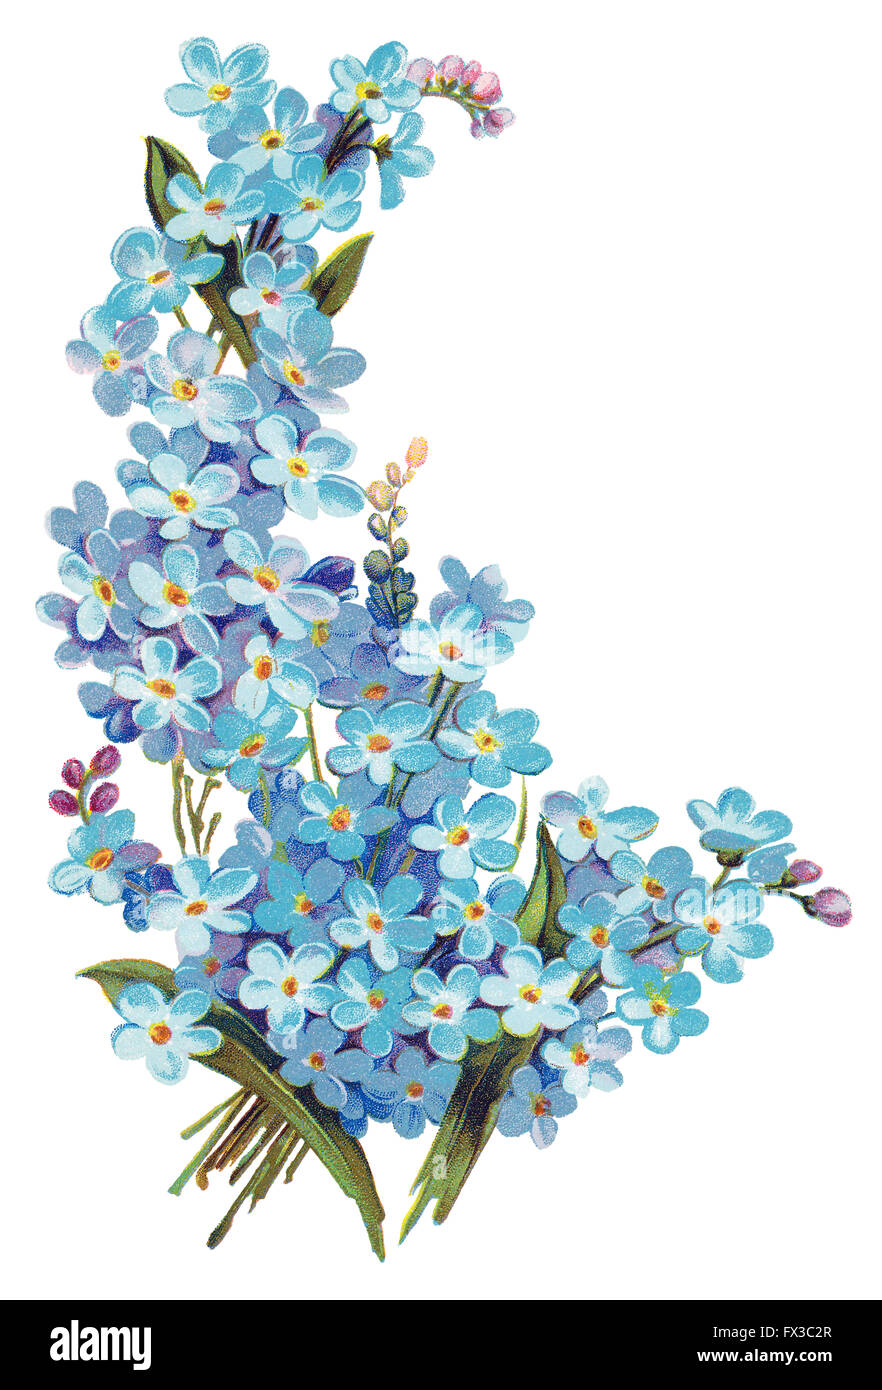 No me olvides las flores Imágenes recortadas de stock - Alamy